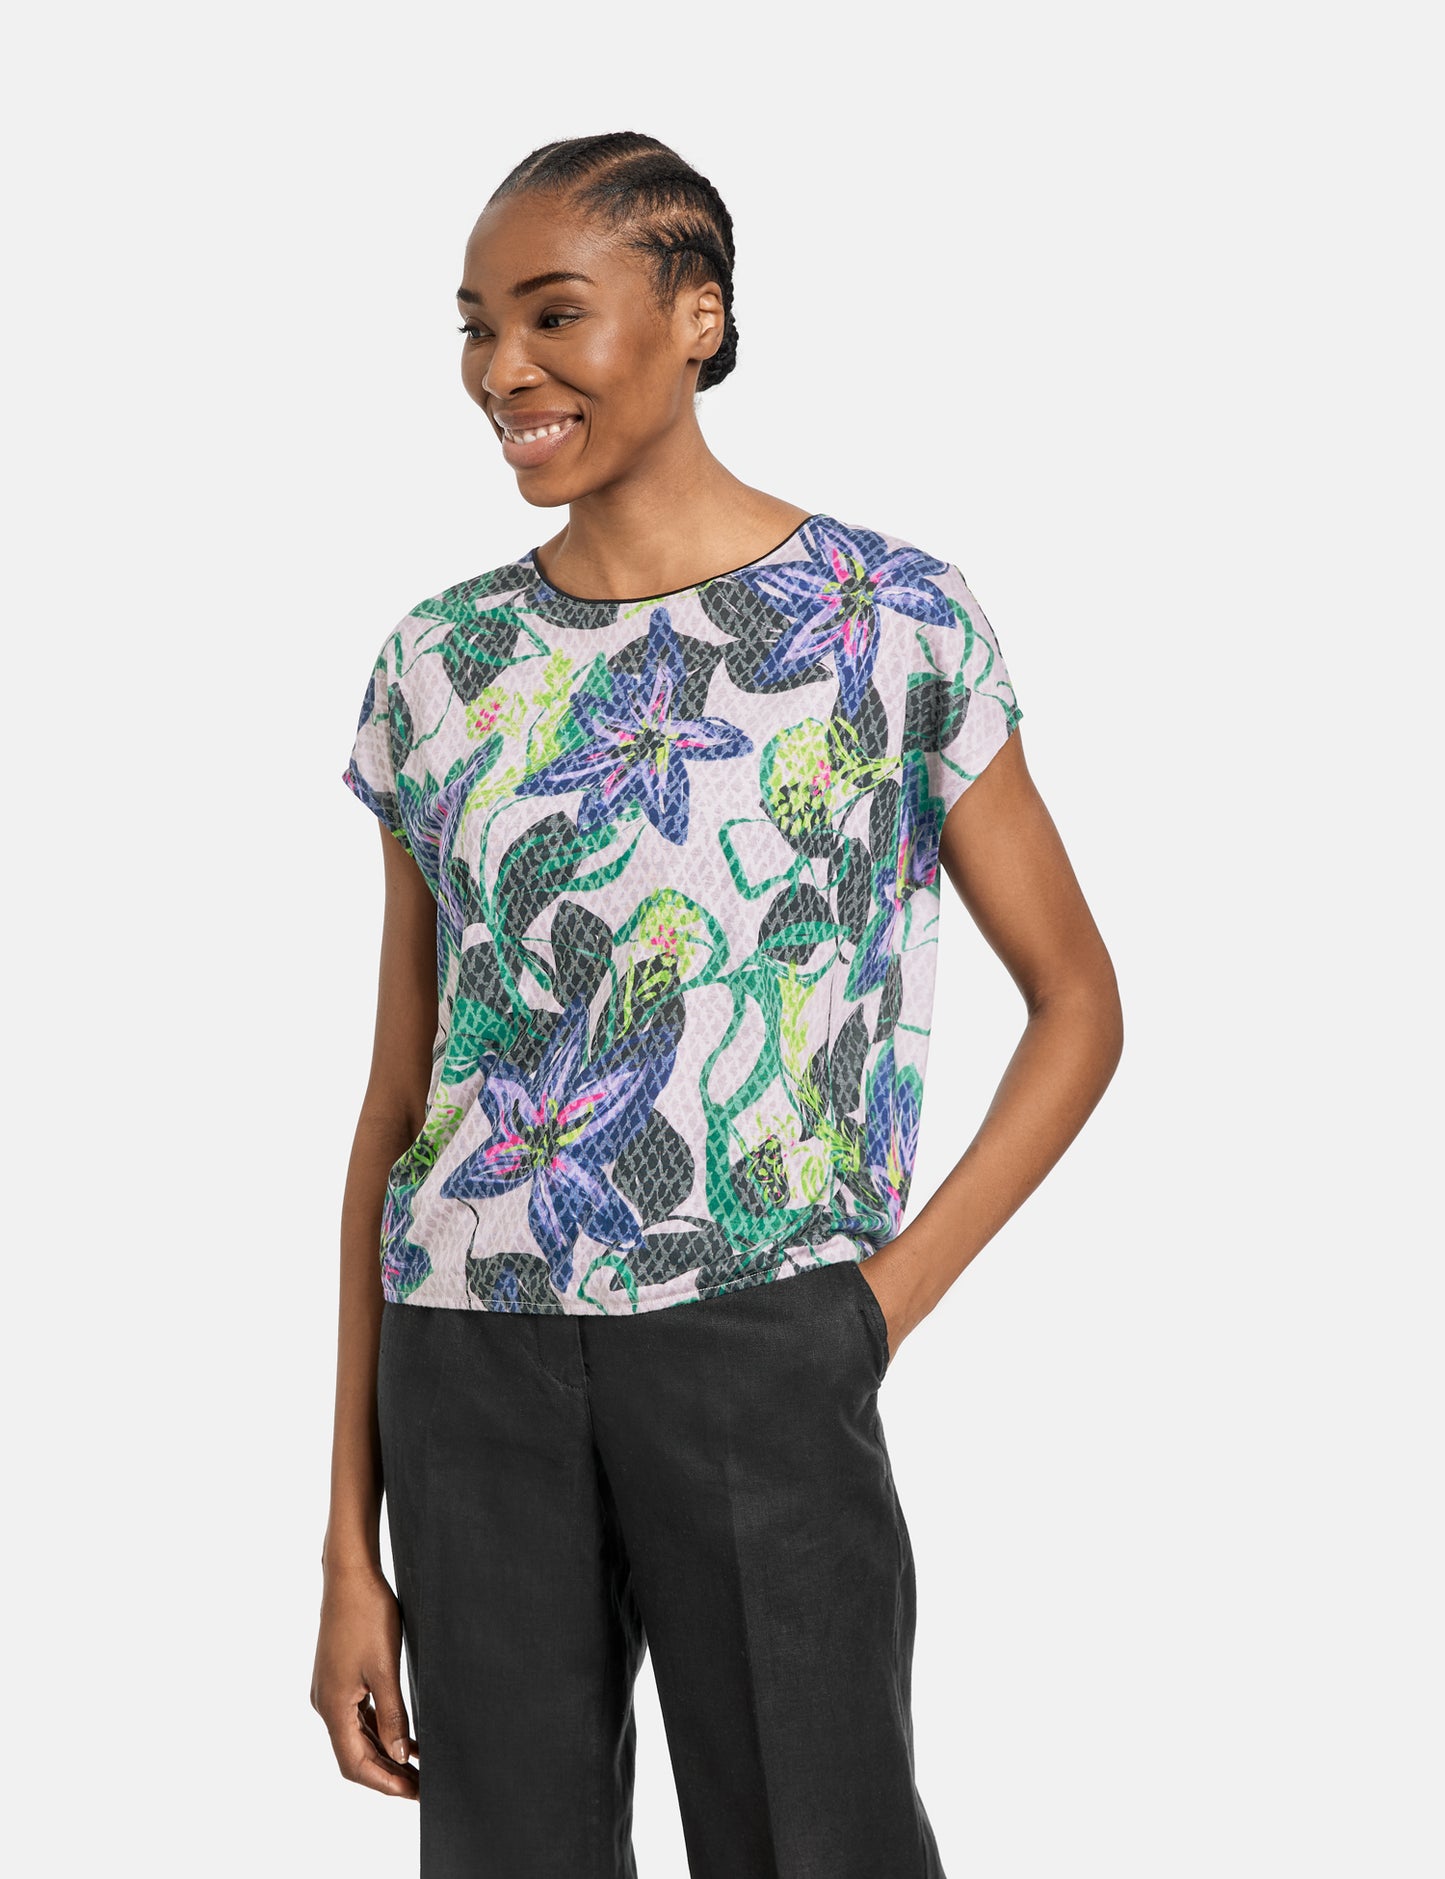 Floral gemustertes Shirt mit Ausbrenner-Qualität